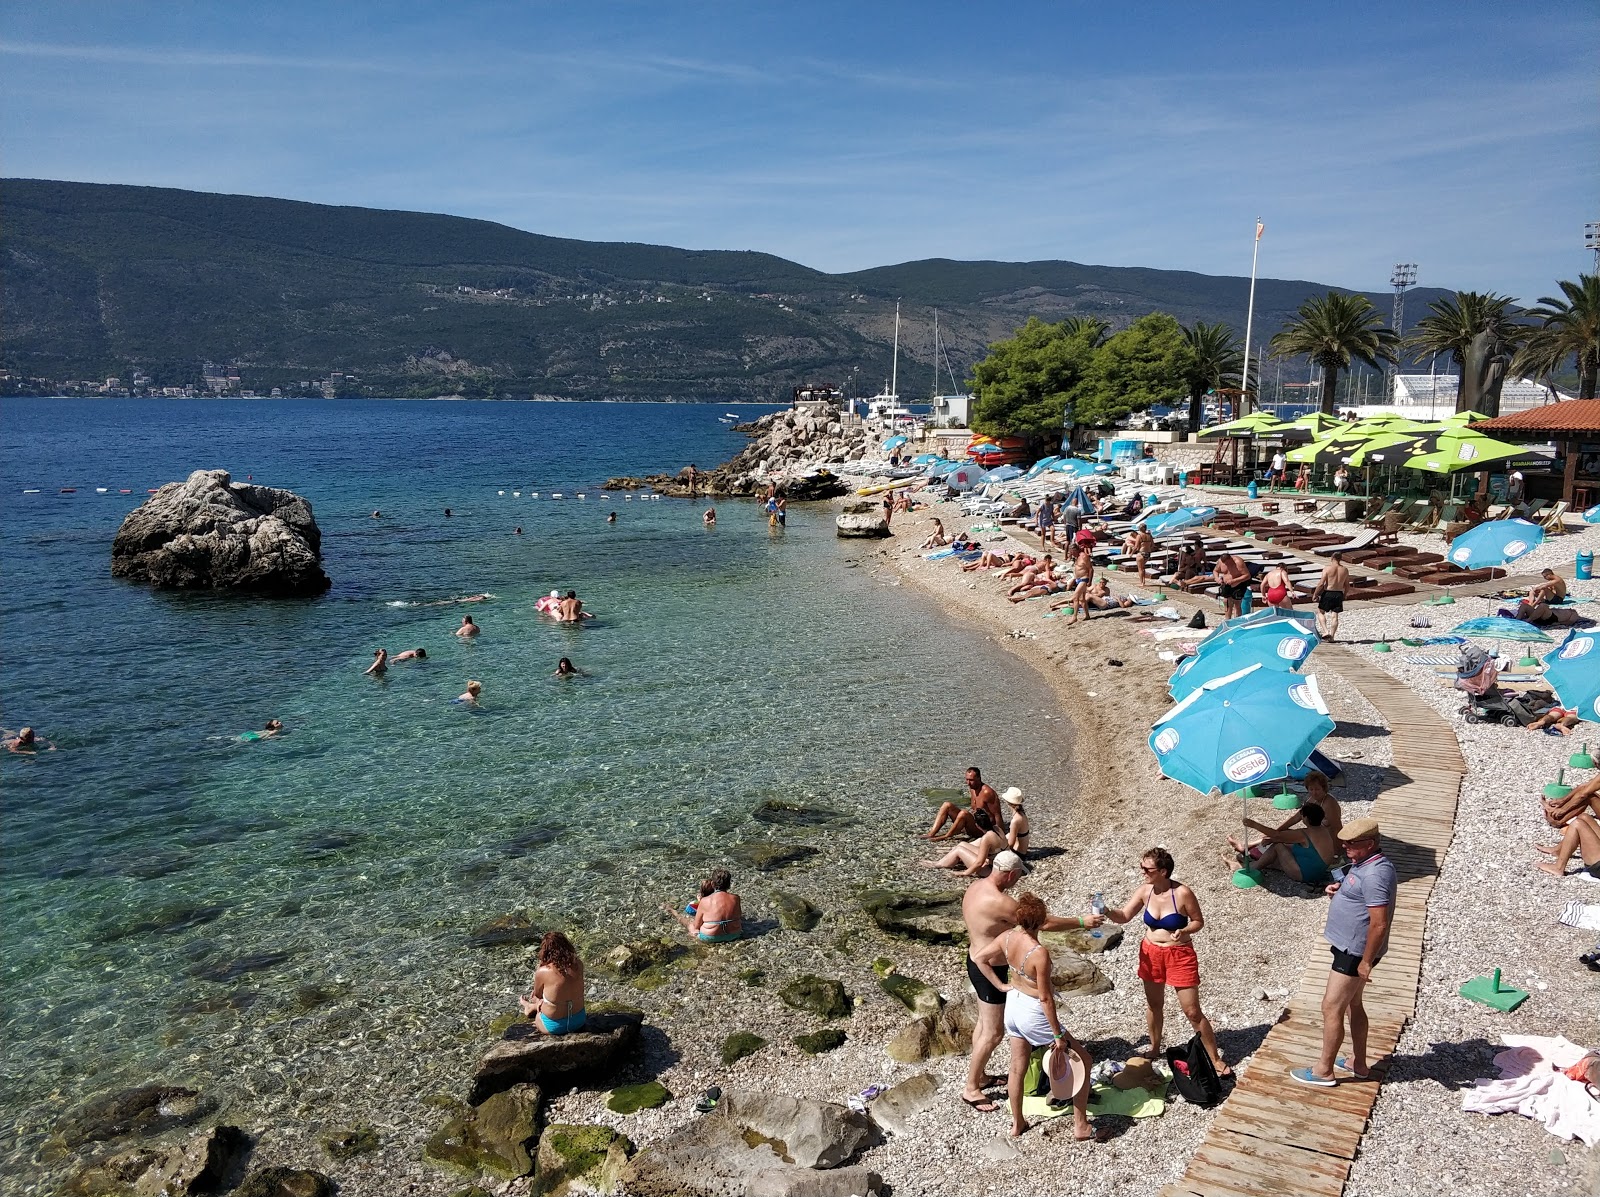 Herceg Novi beach'in fotoğrafı hafif ince çakıl taş yüzey ile